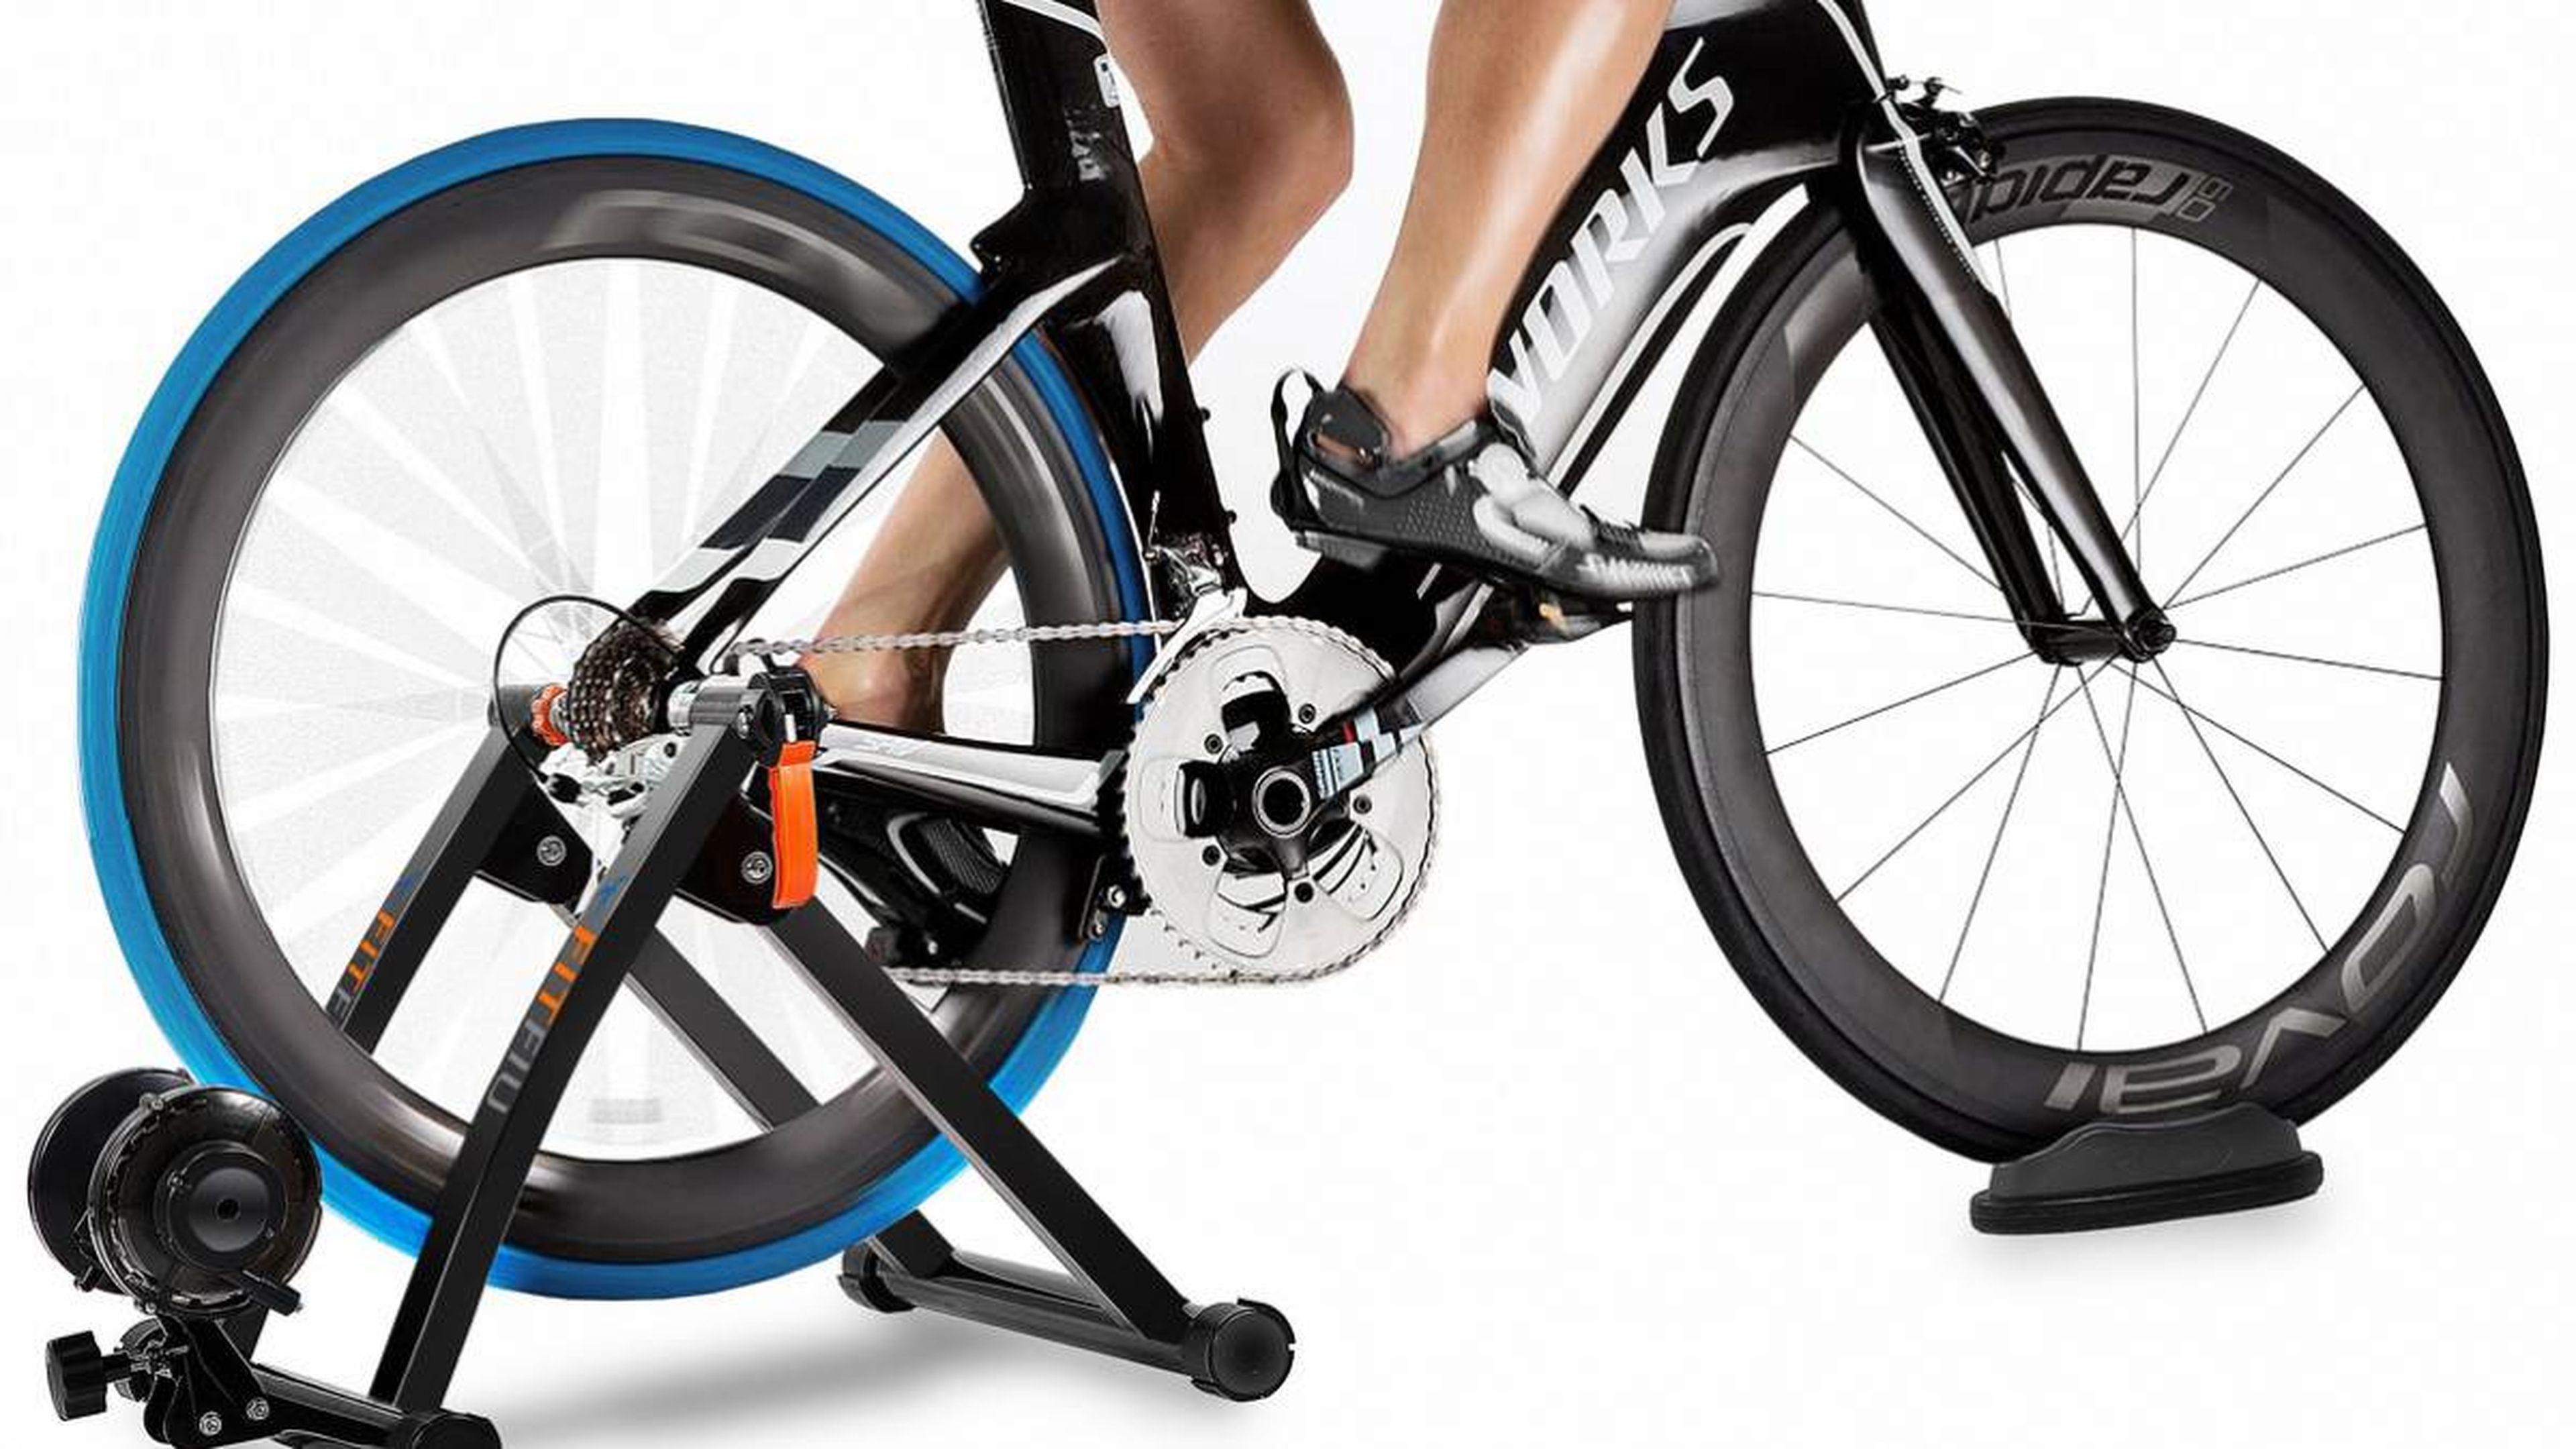 Rodillos para bicicleta: diferencias, compatibilidad y cómo elegir el mejor rodillo para montar bicicleta dentro de casa | Computer Hoy